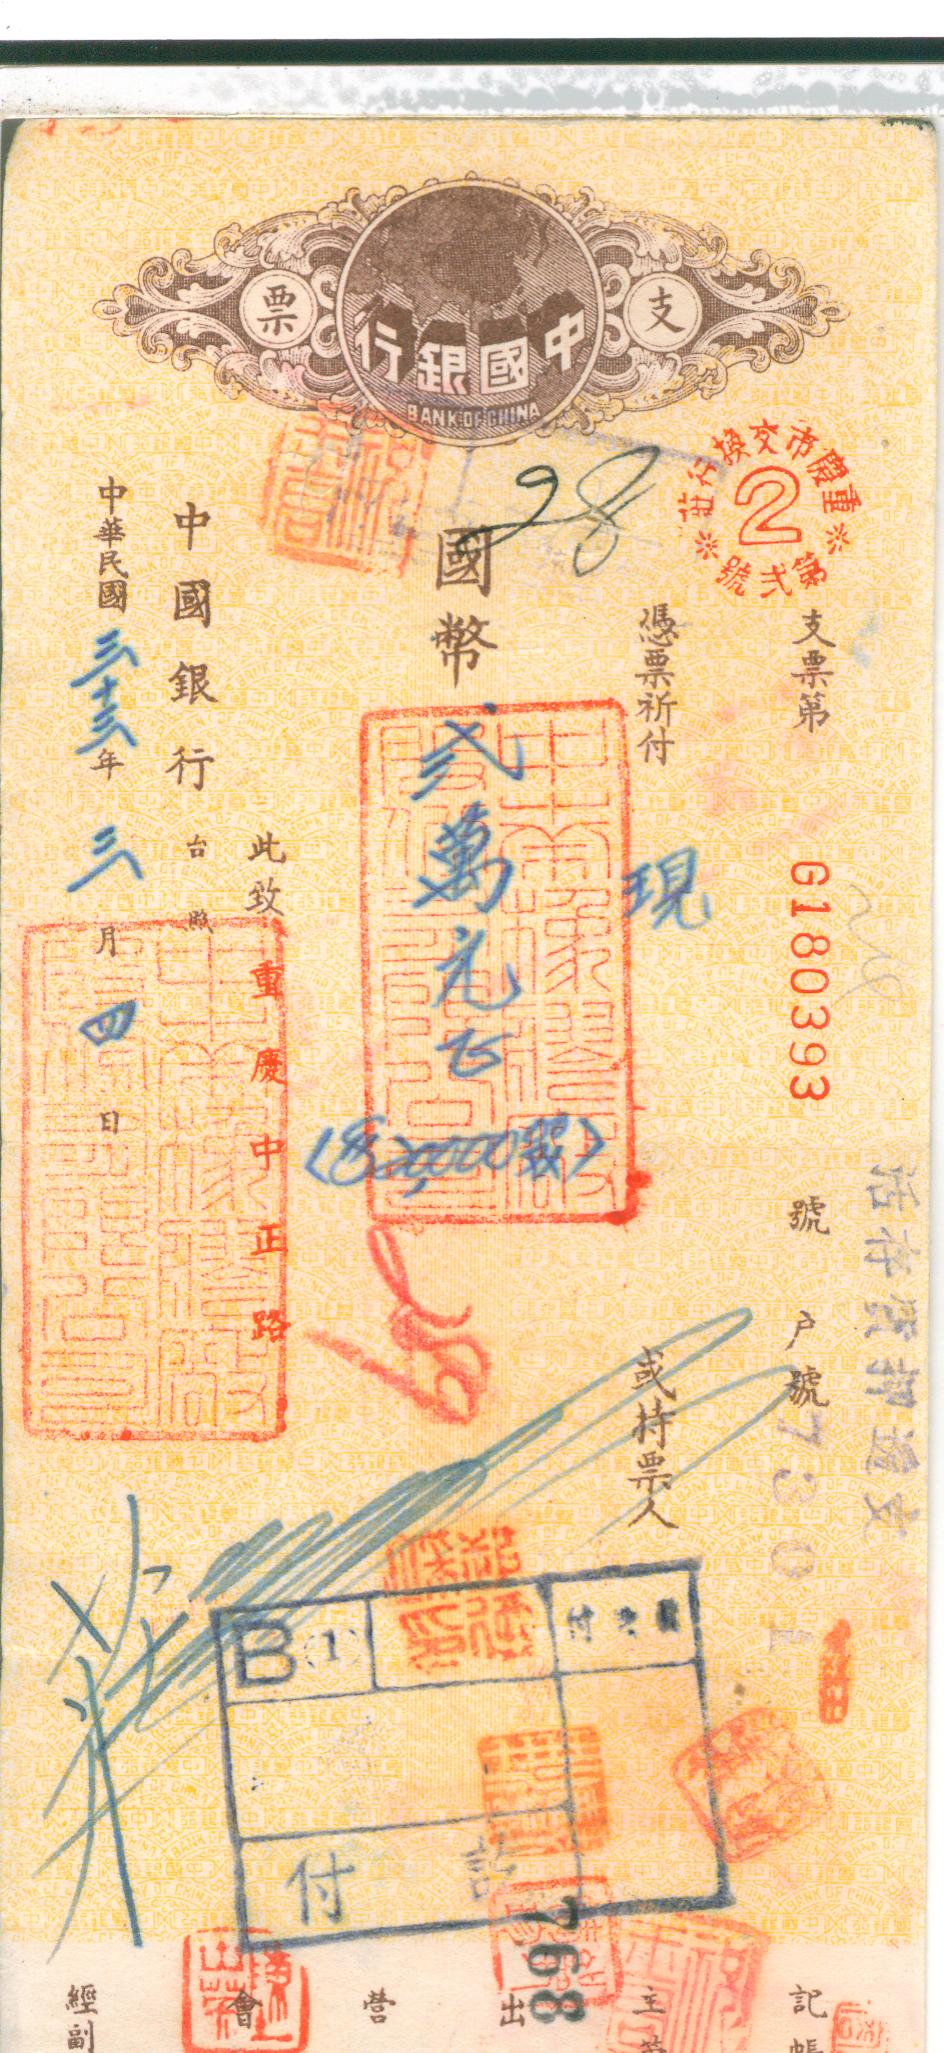 D1060, Check of Bank of China, 1944 Chongqing